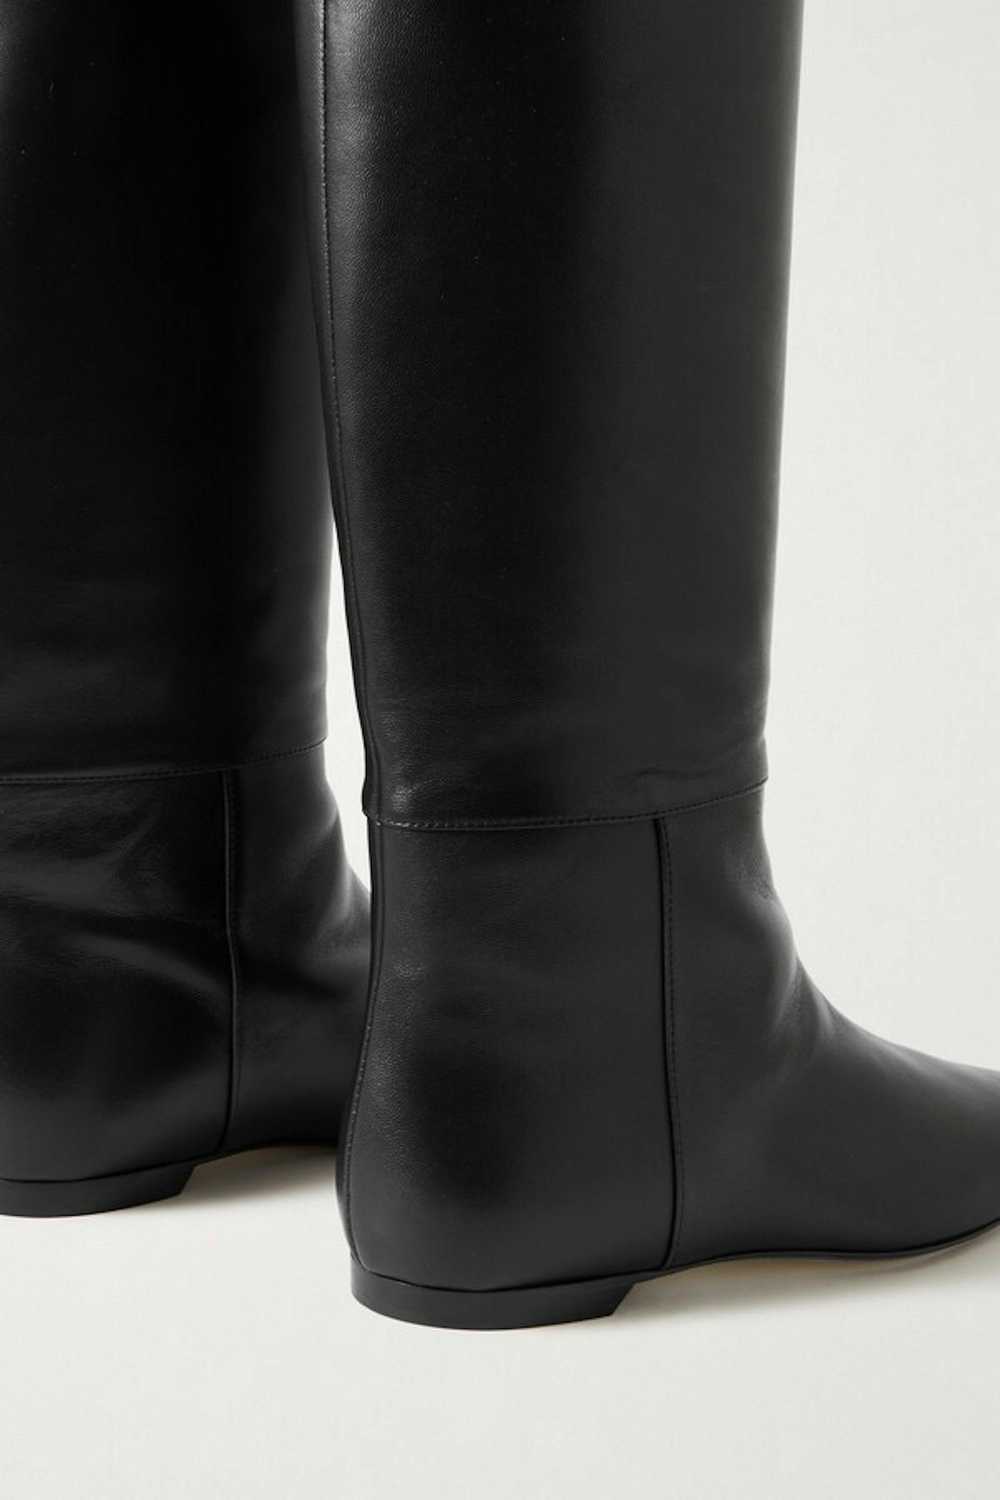 KHAITE KHAITE Diego Leather Knee Boots Size 38.5 - image 3